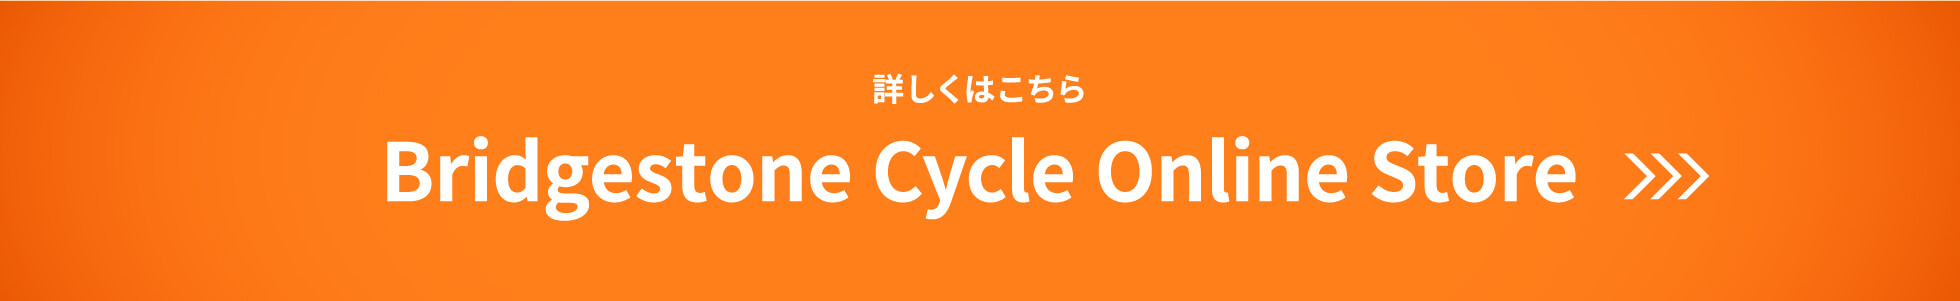 詳しくはこちら Bridgestone Cycle Online Store